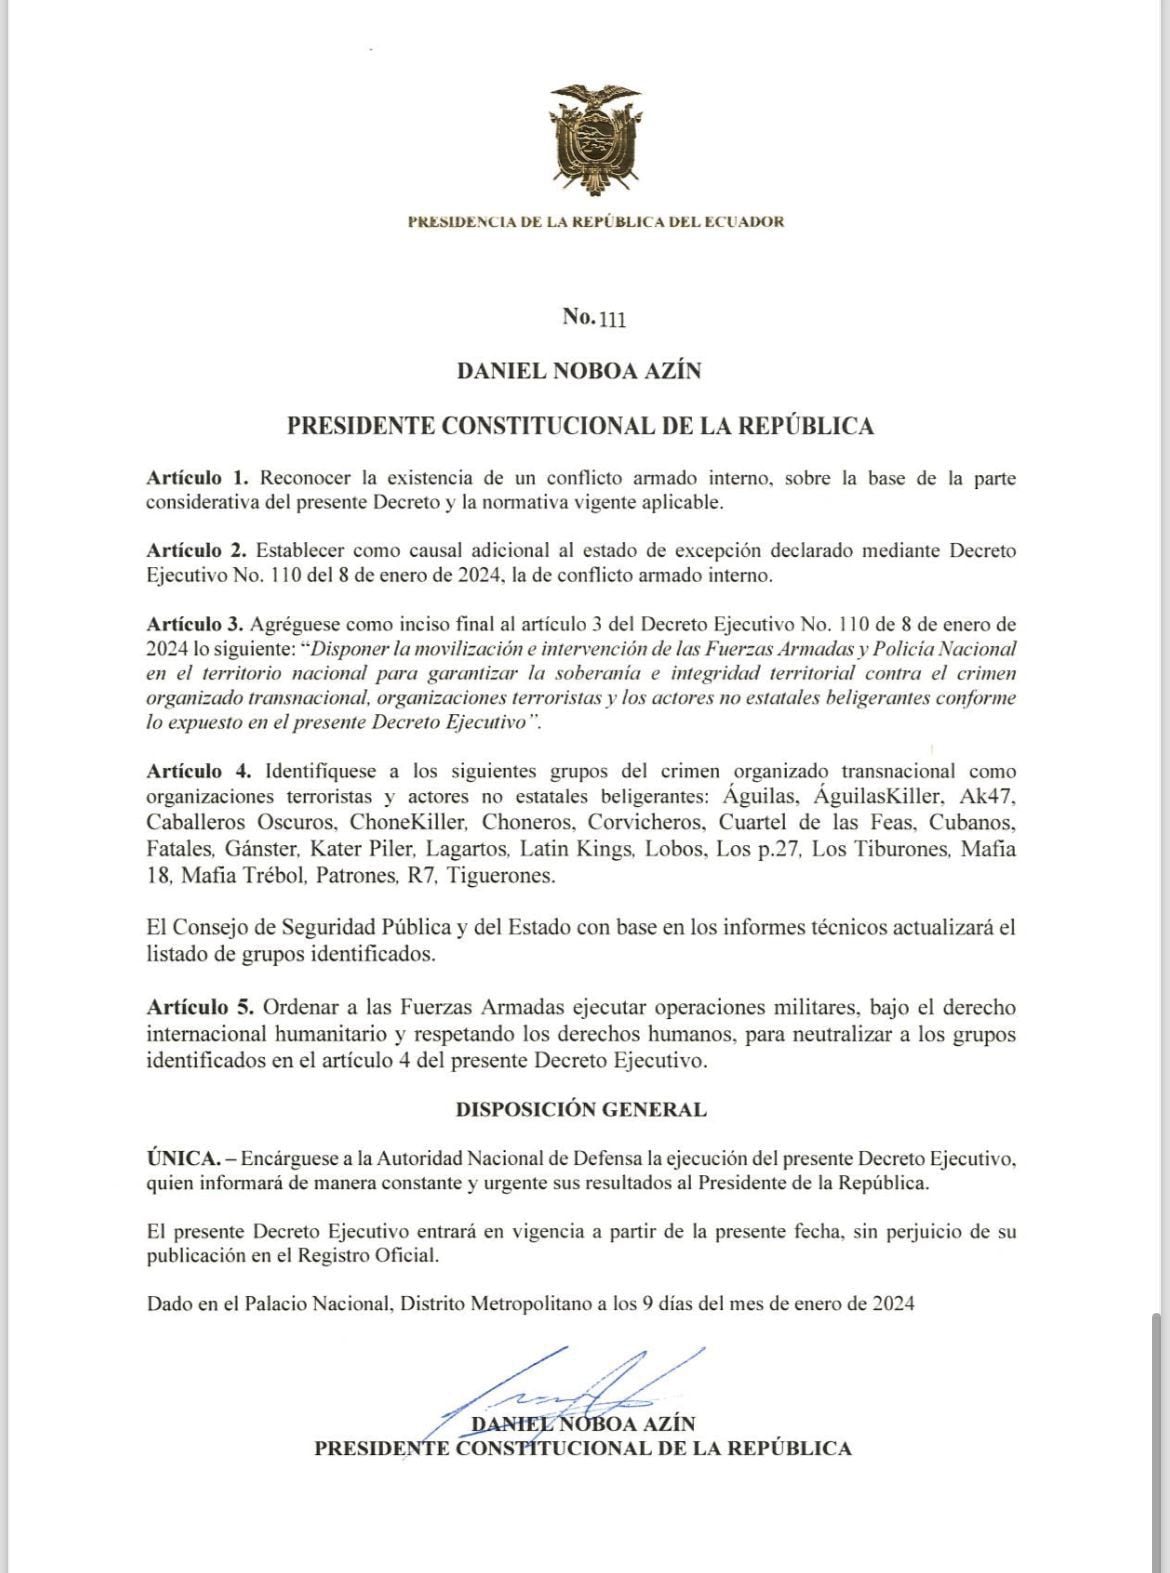 Este fue el decreto que firmó el presidente de Ecuador, Daniel Noboa Azin, para hacer frente al caos armado.